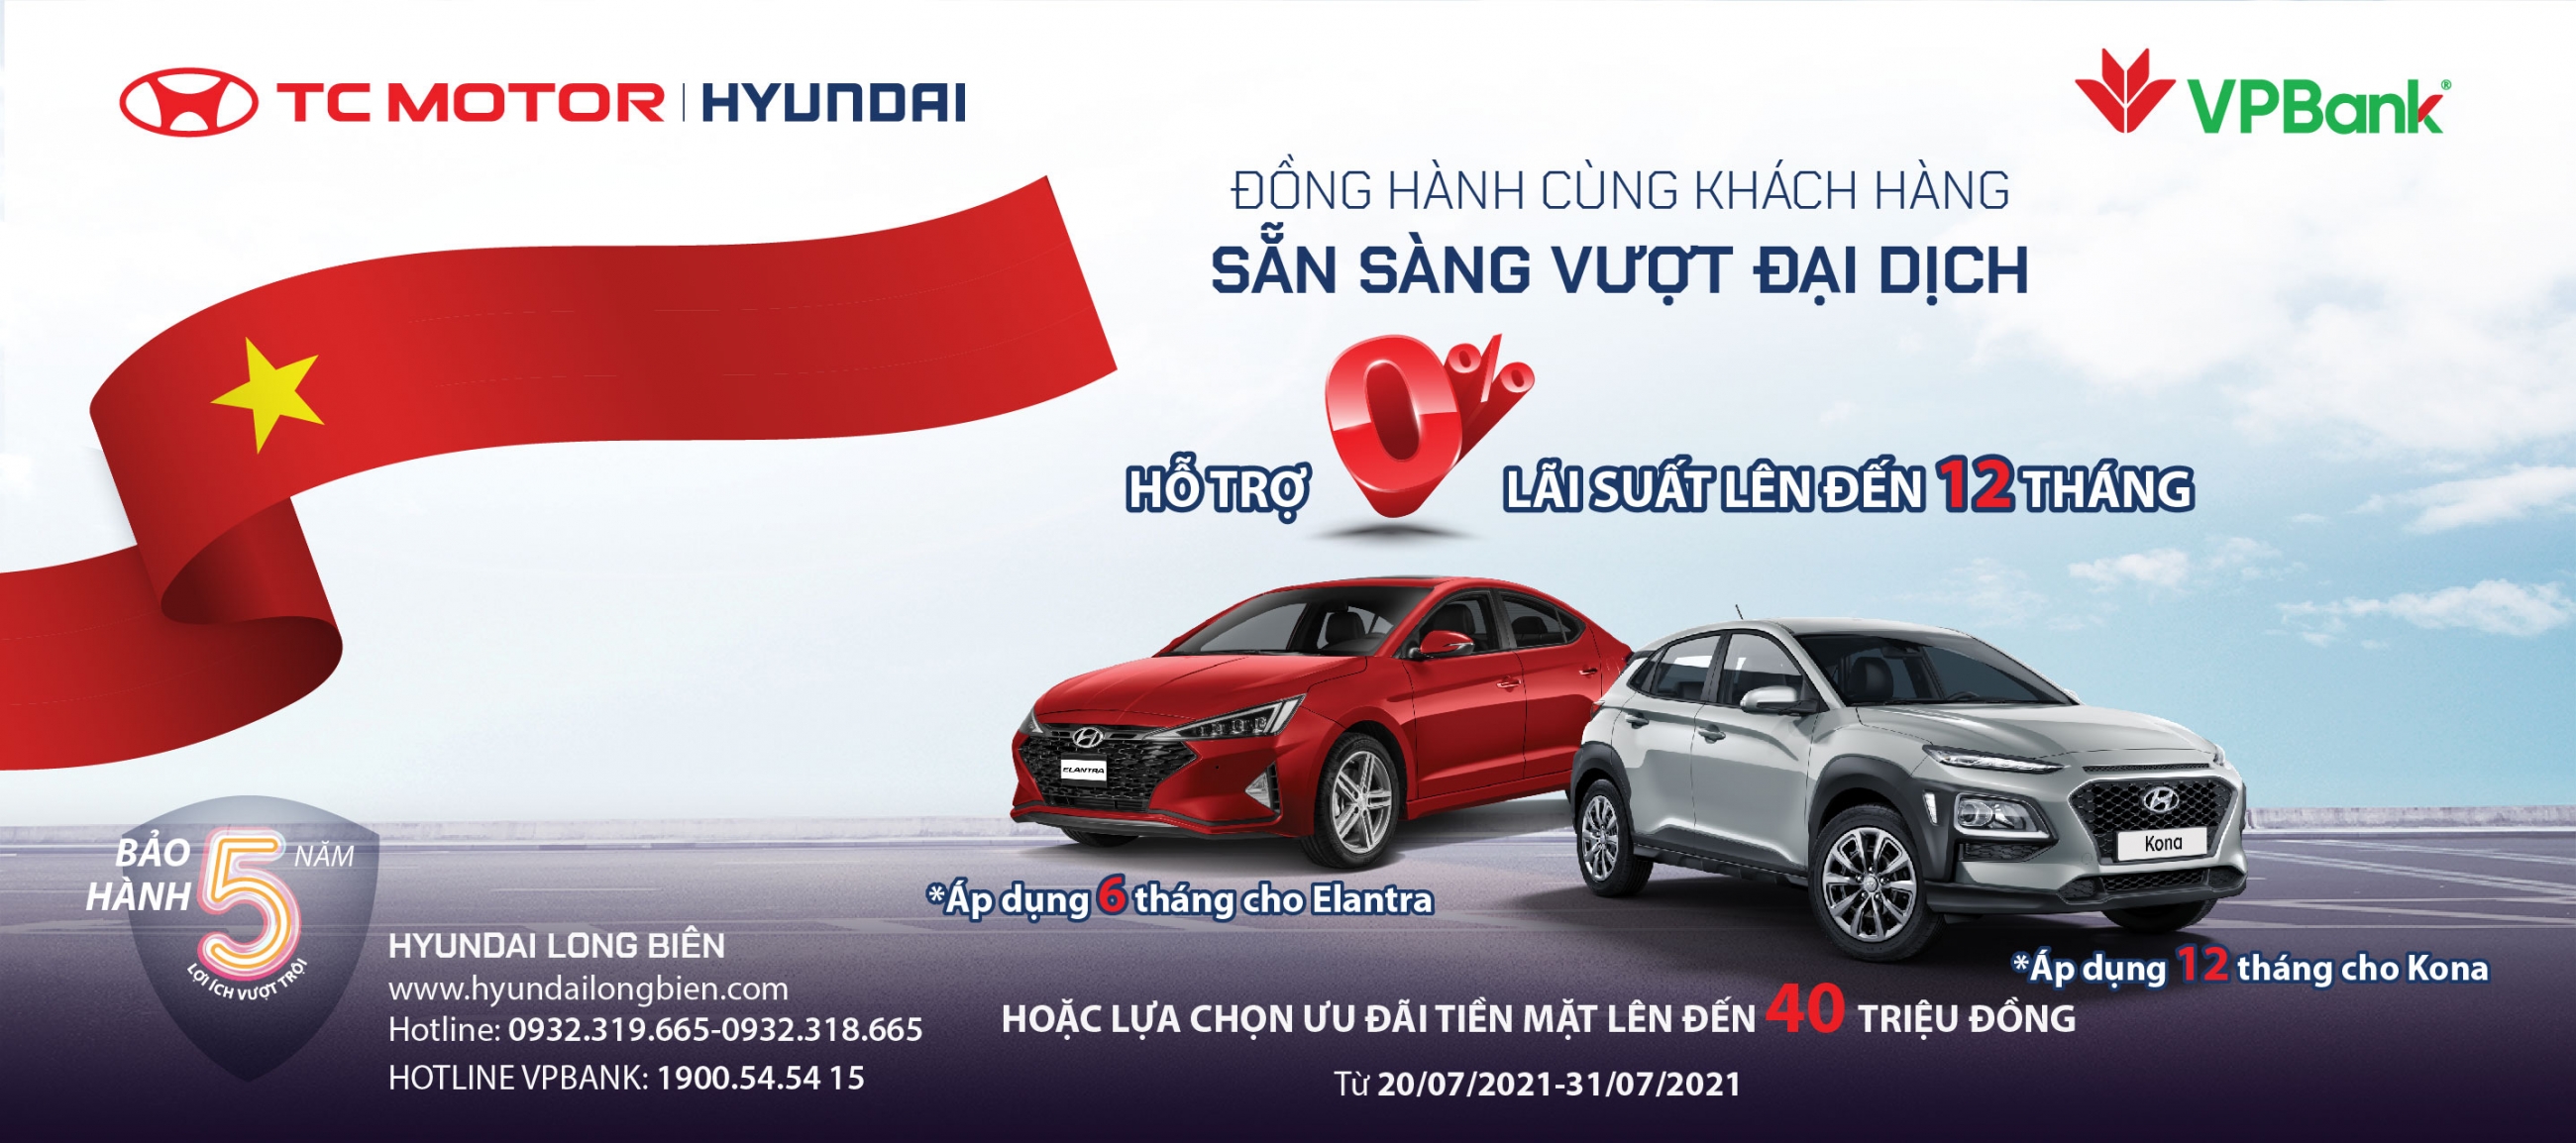 Hyundai KONA - Elantra khuyến mại tới 40 triệu đồng - Đồng hành cùng khách hàng vượt đại dịch